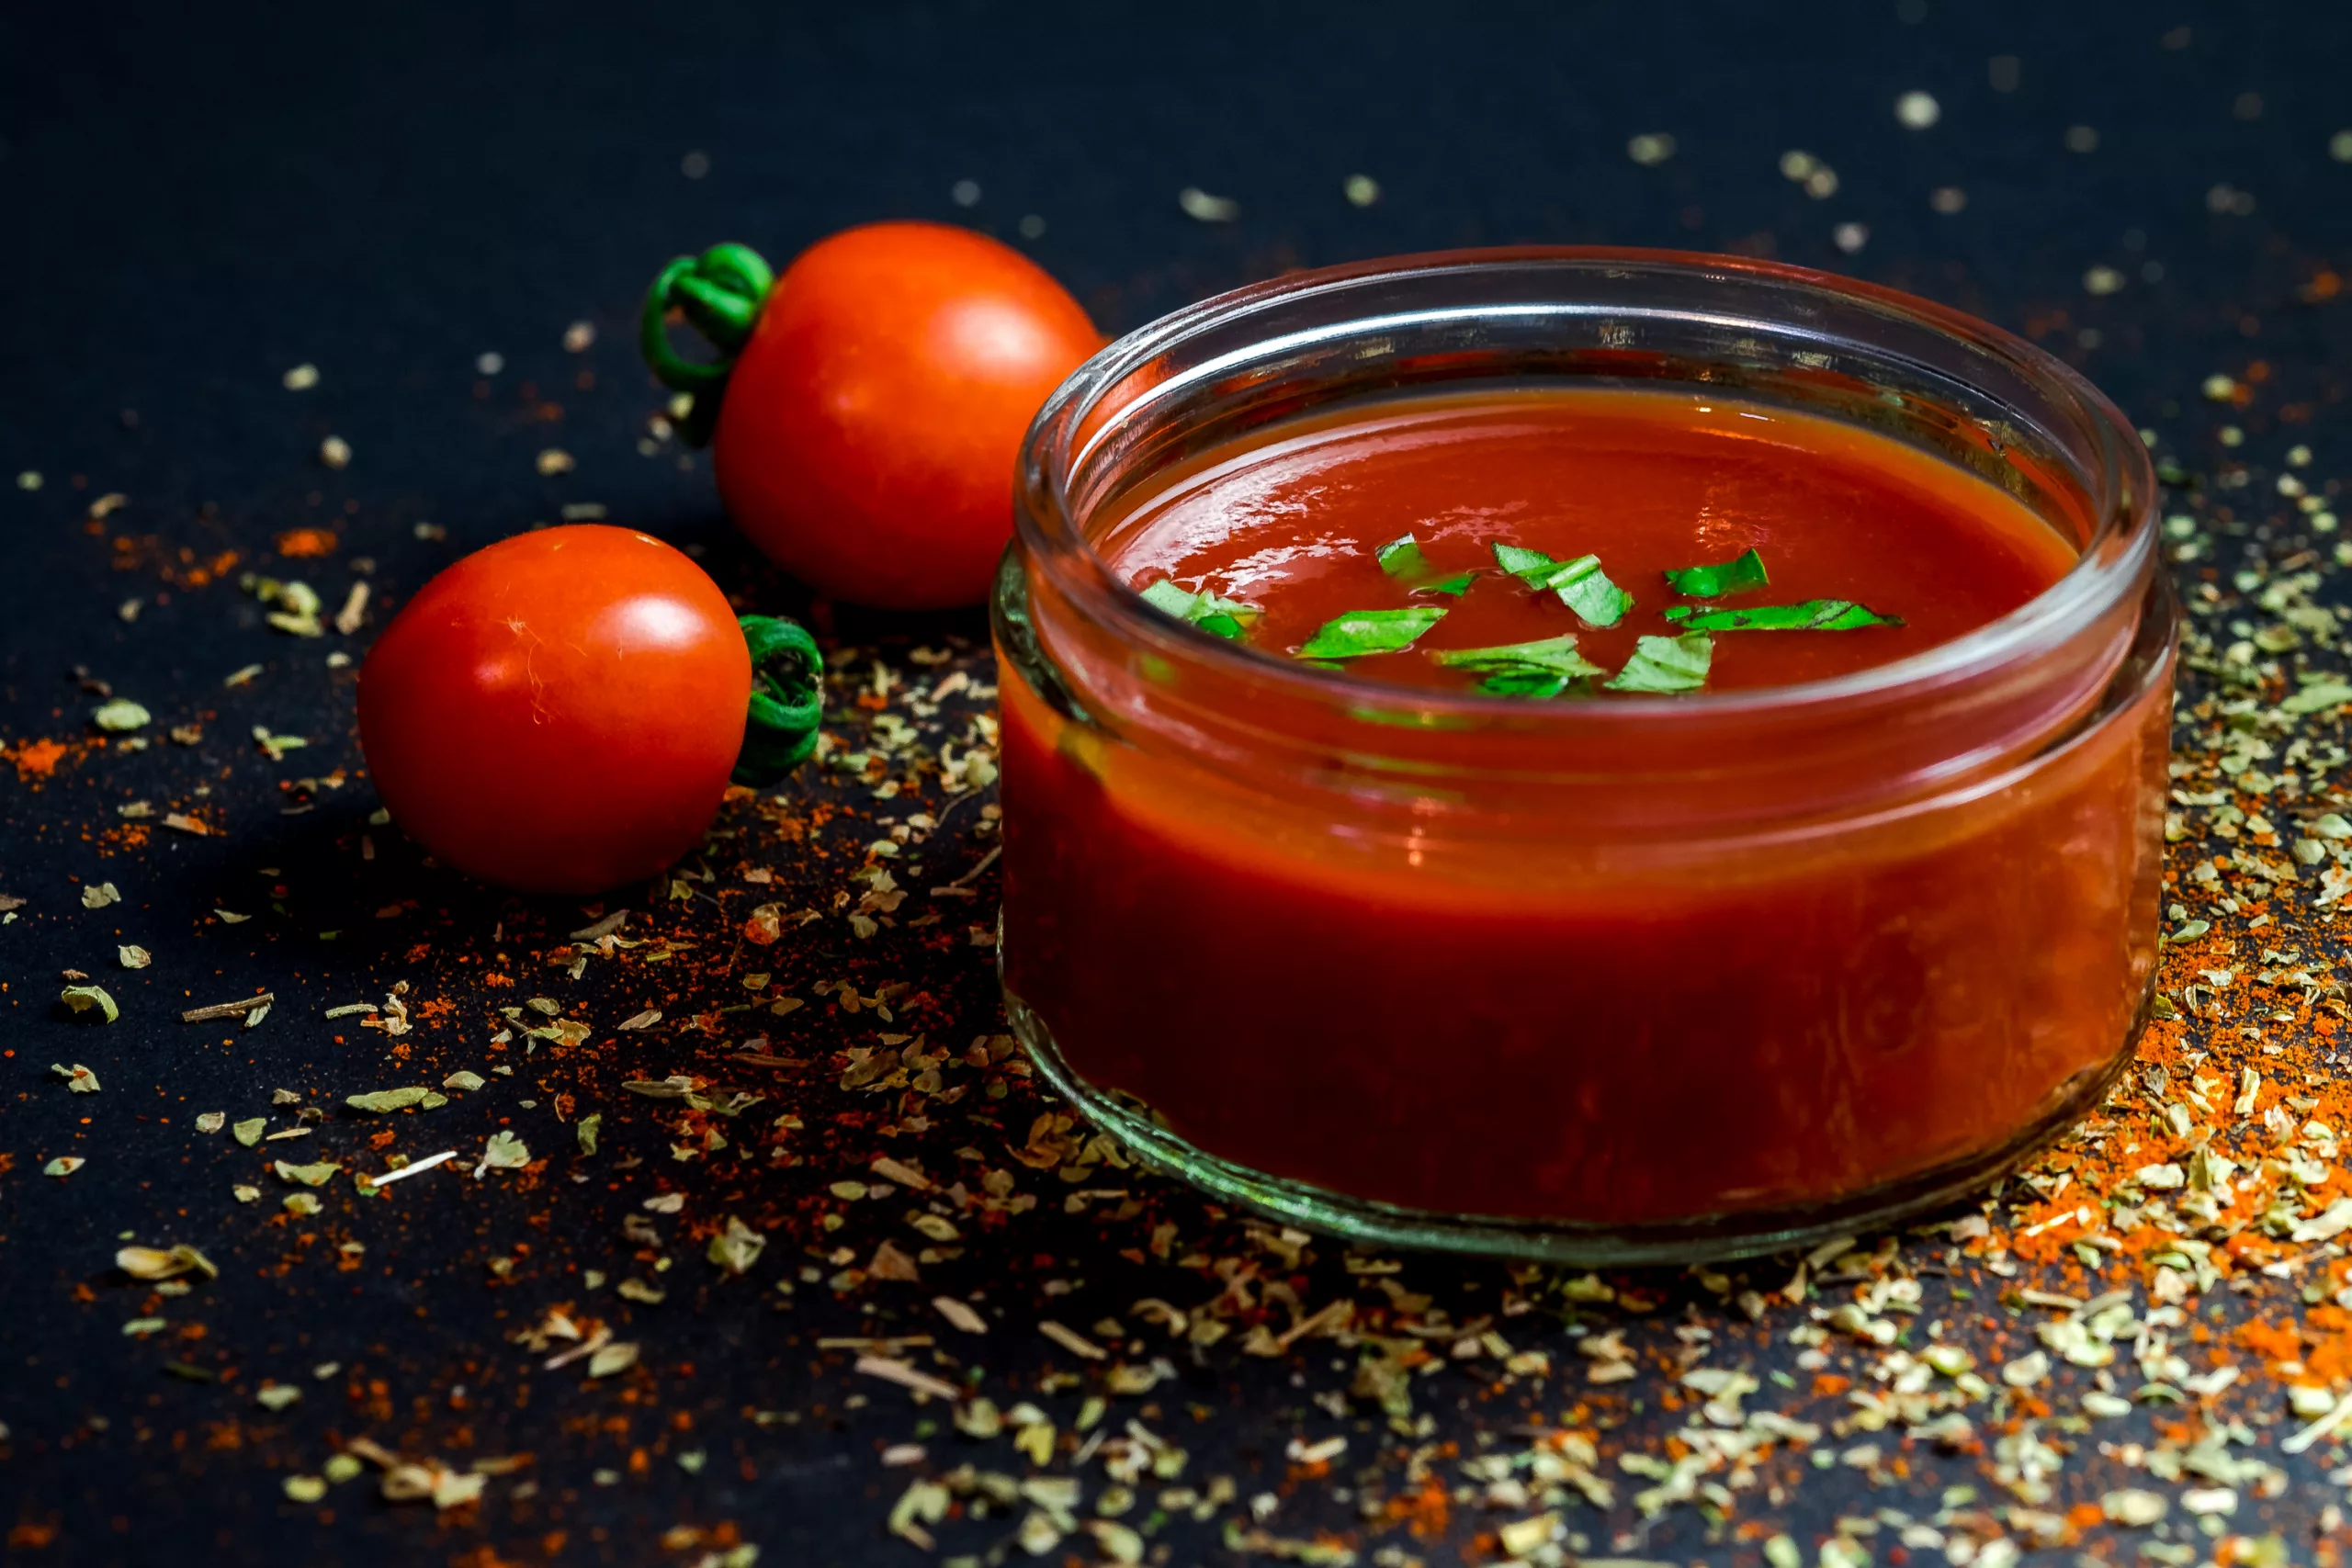 Comment Retirer les Graines lors de la Préparation d’une Sauce Tomate ?